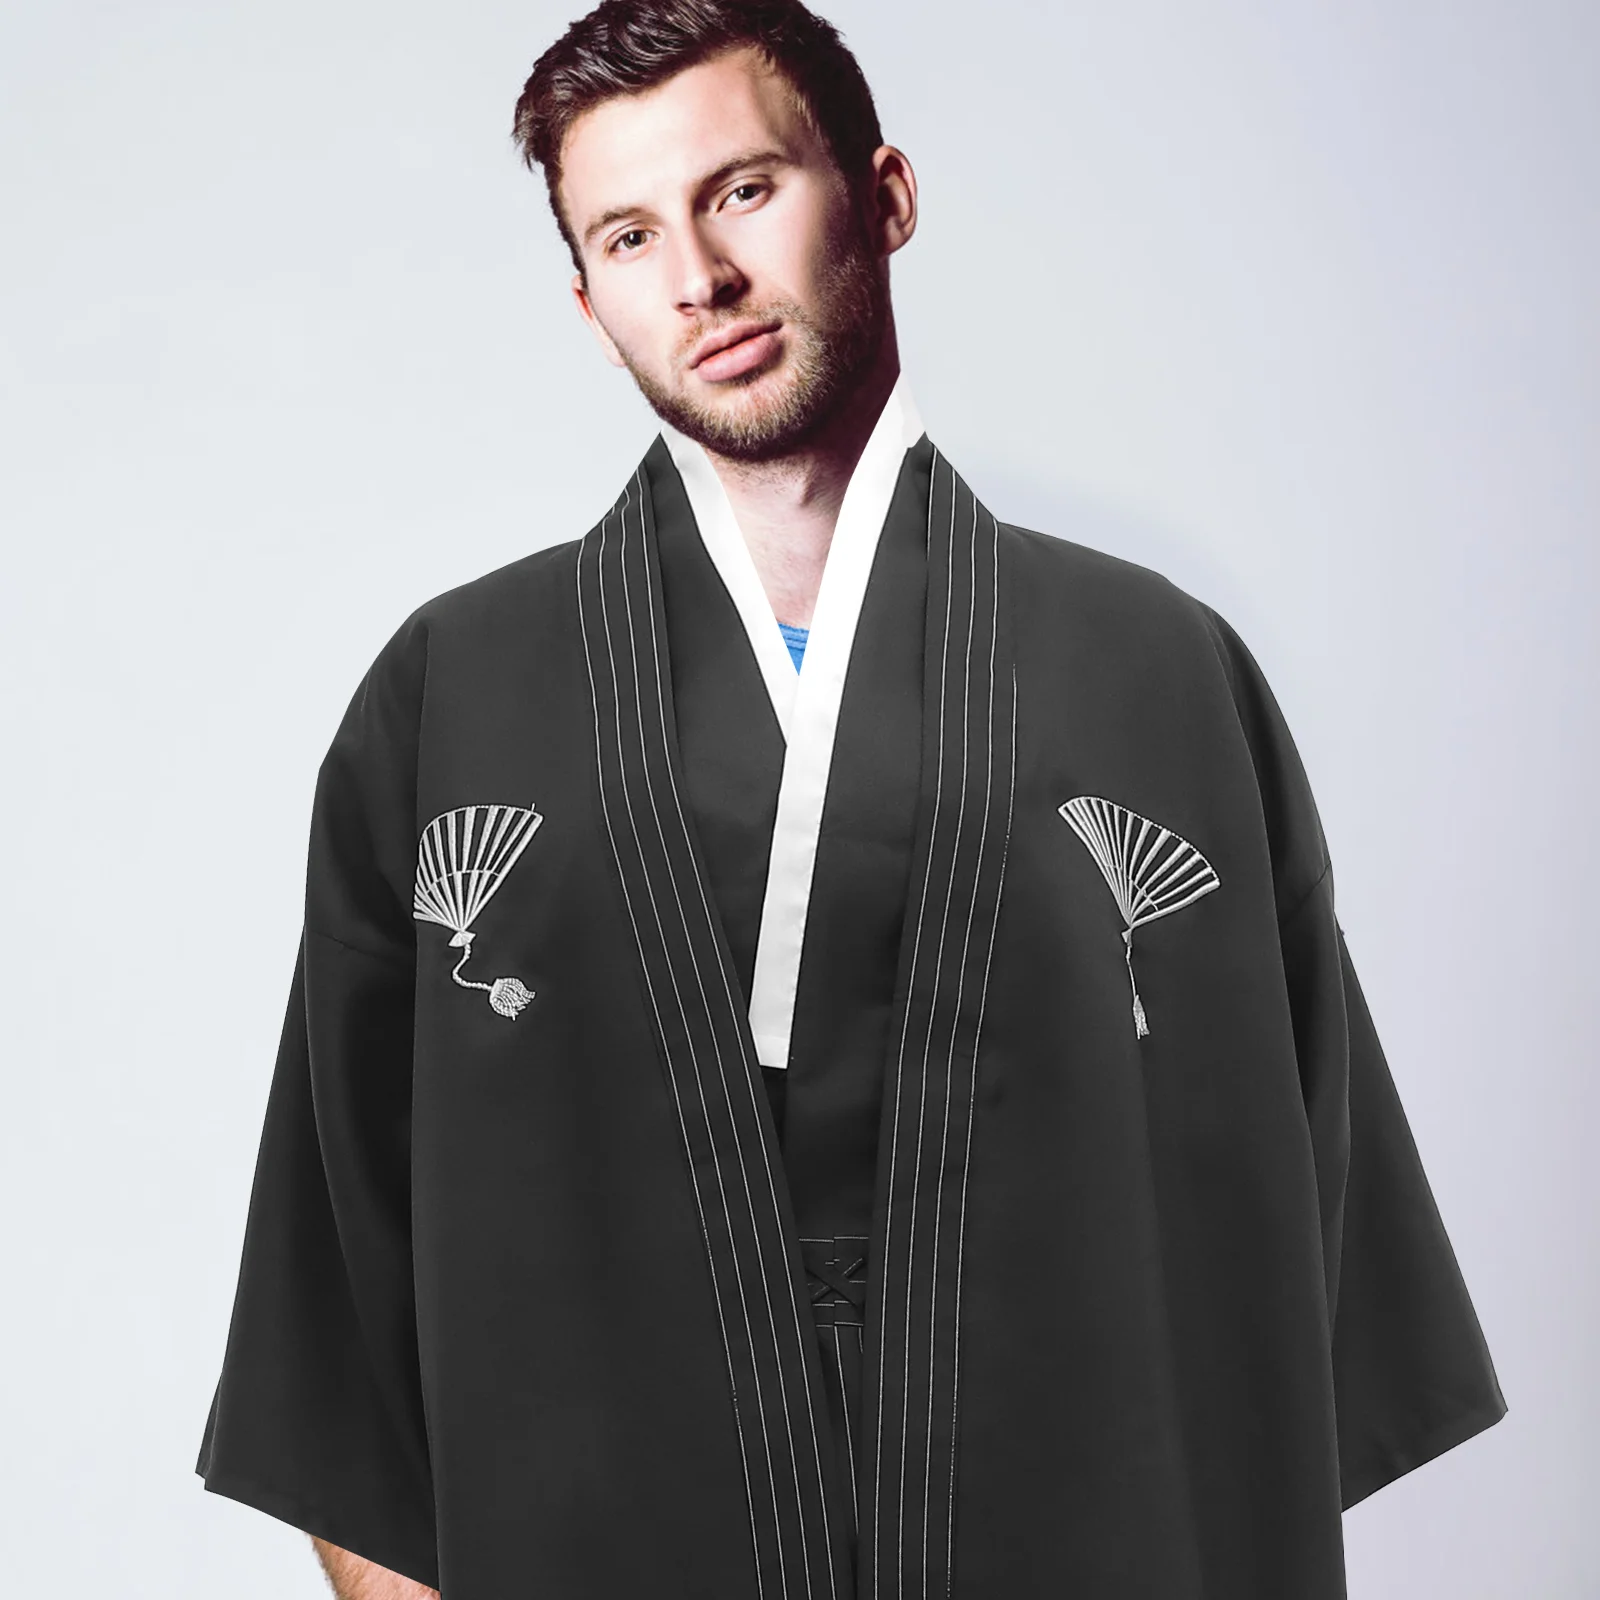 

Мужское платье, одежда, костюм самурая, мужская верхняя одежда, стильное кимоно, пальто, японский юката